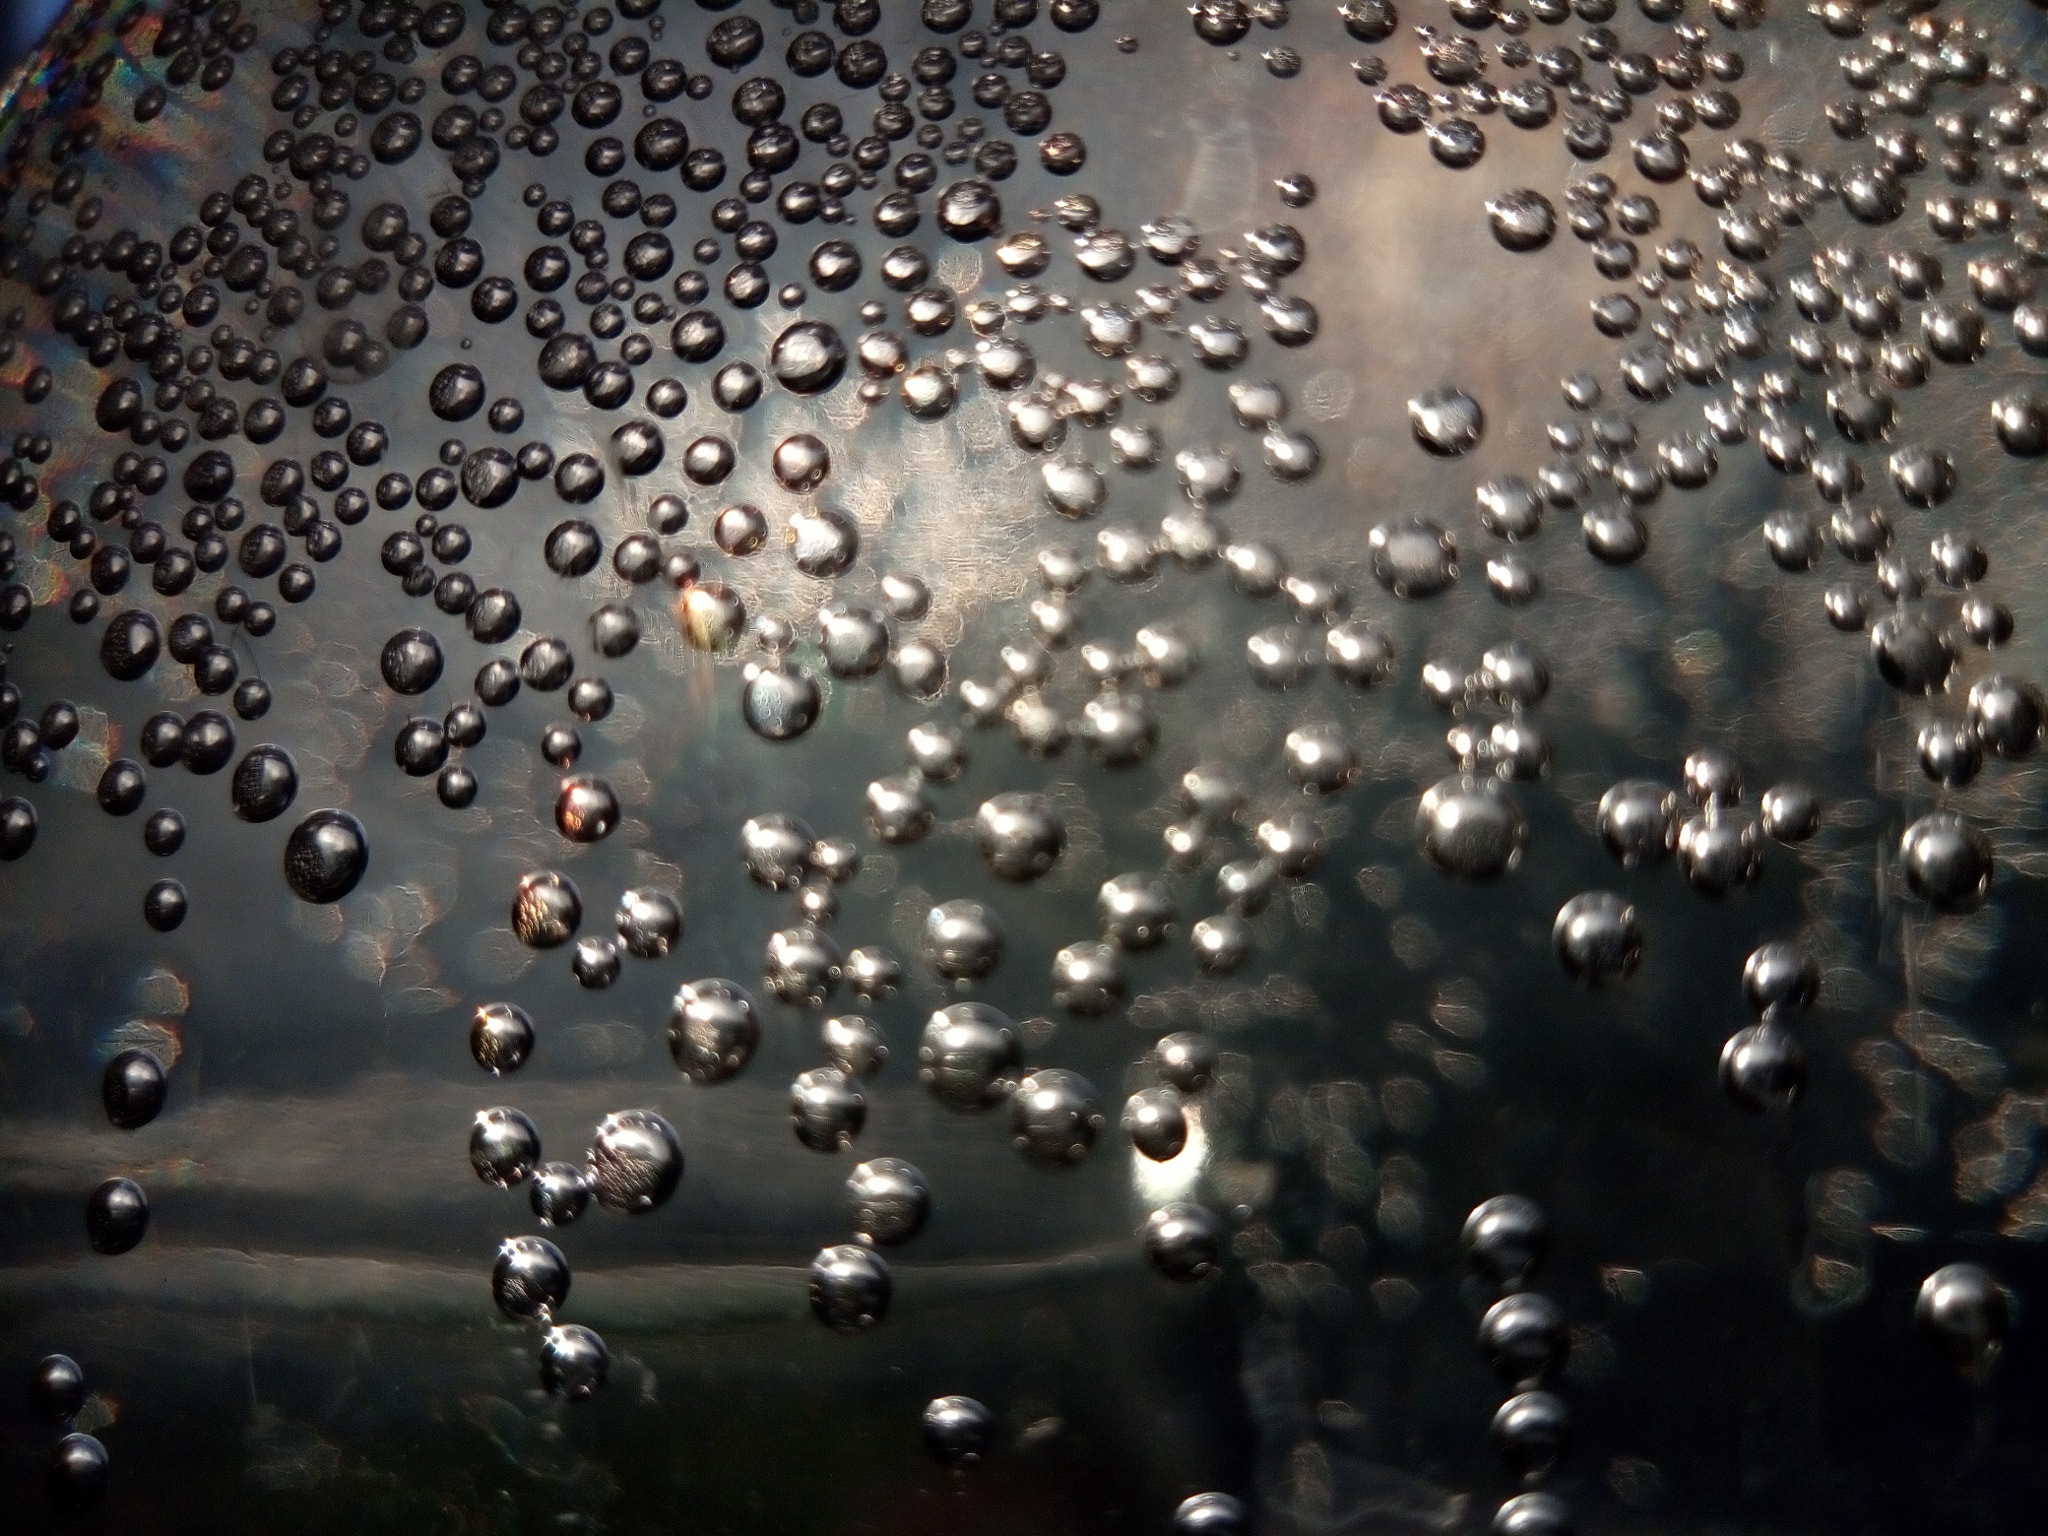 Meizu M5s sample photo. Bubbles photography